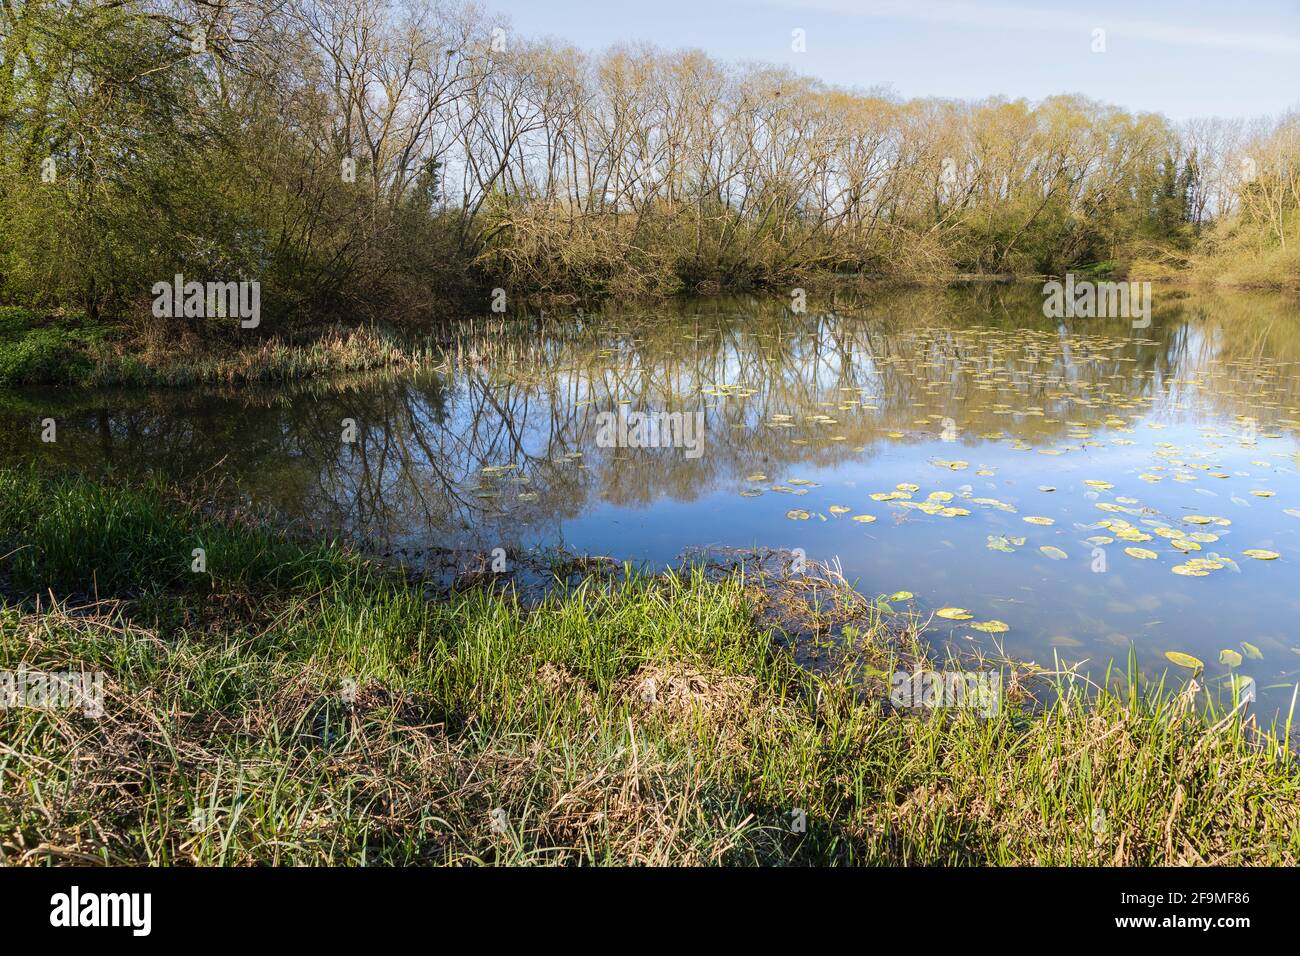 Una imagen de uno de los hermosos lagos con árboles en Frisby Lakes, Leicestershire, Inglaterra, Reino Unido. Foto de stock